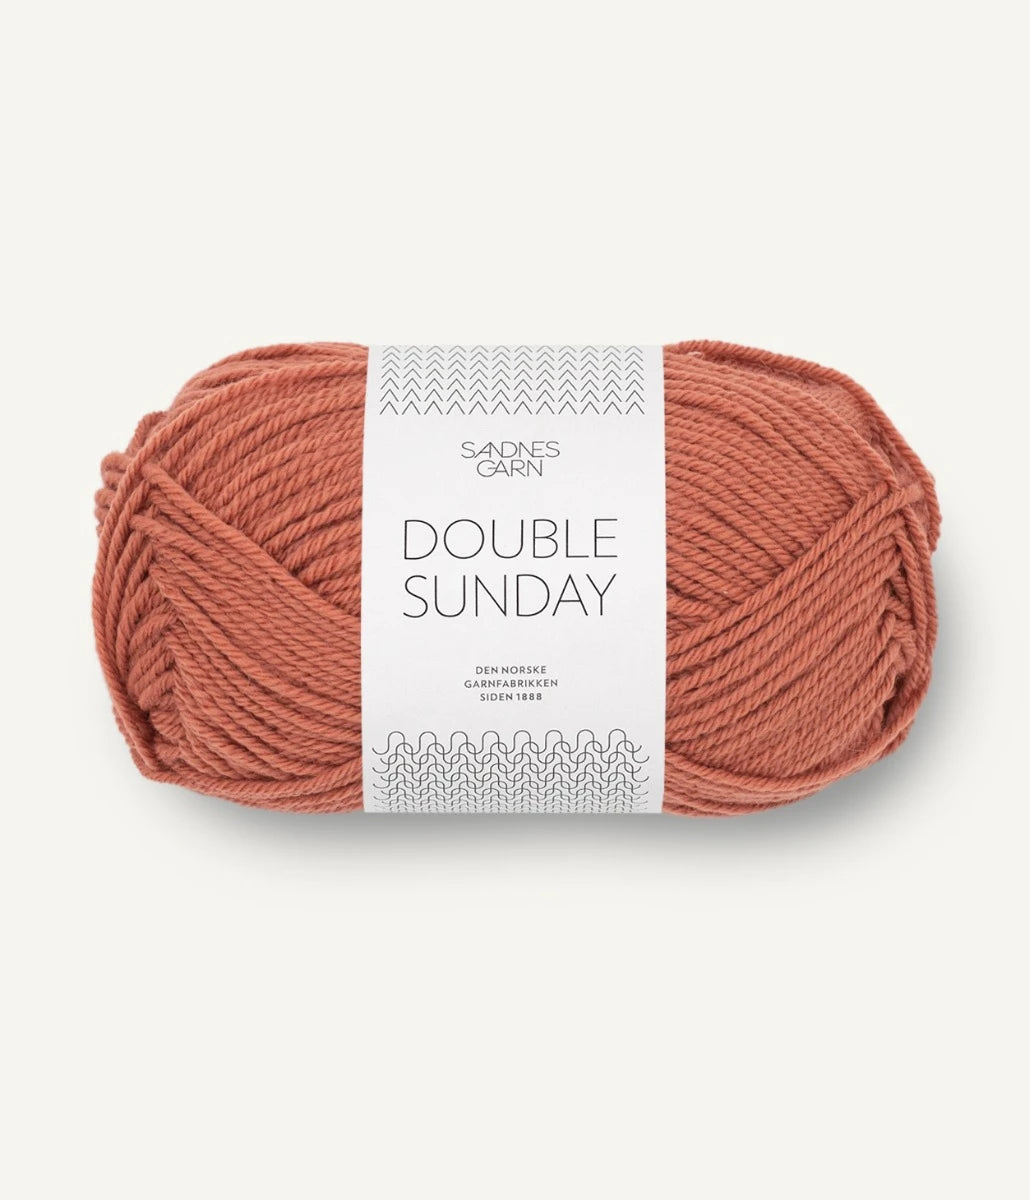 Kuvassa on Sandnes Garn Double Sunday -lanka (yarn) värissä Lys Kobberbrun.